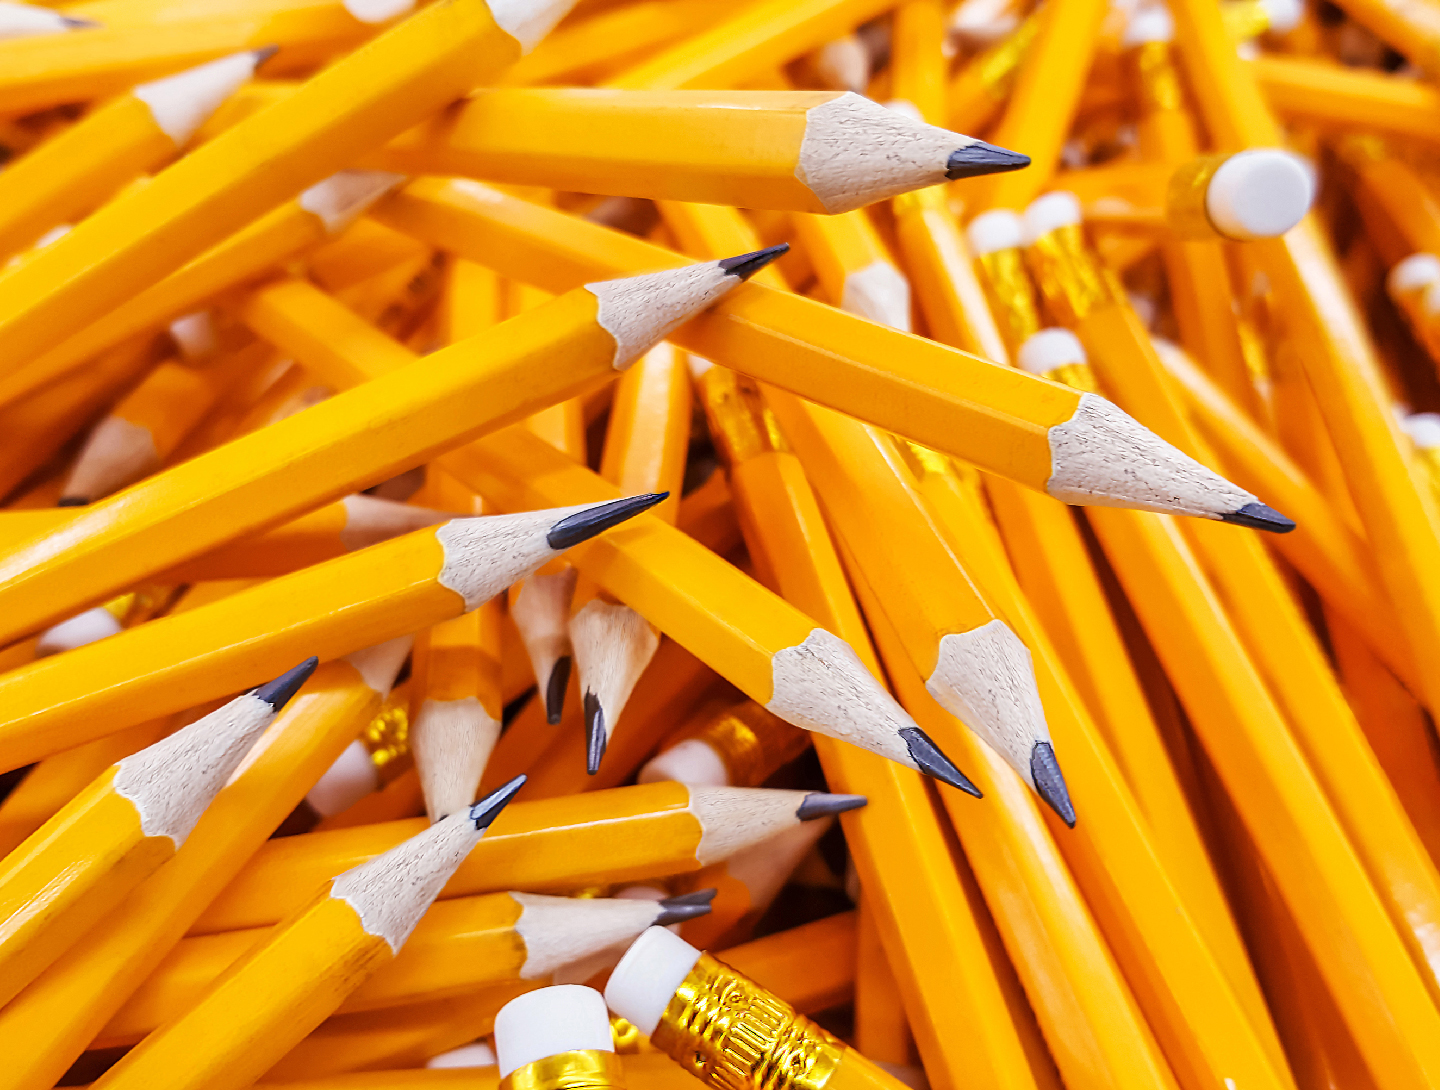 La classica matita gialla